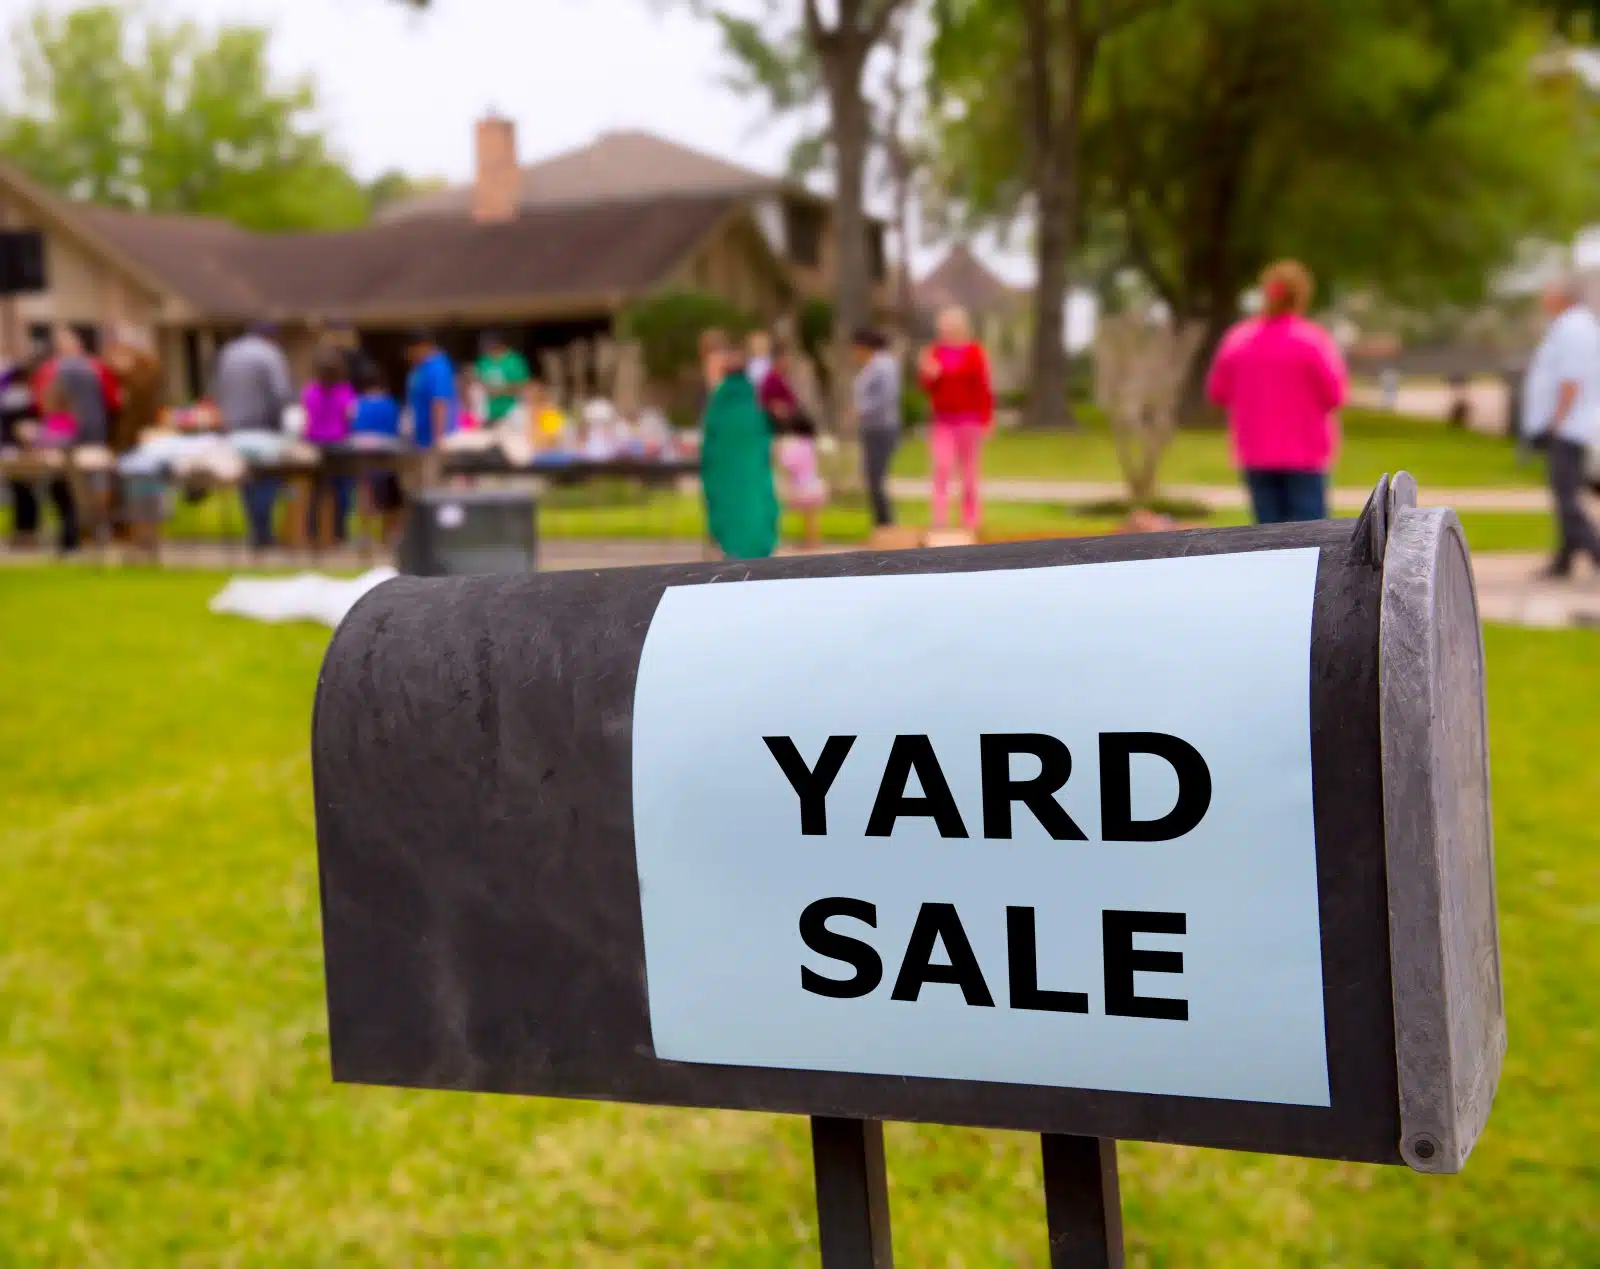 Yard sale Depositphotos 26185441 XL